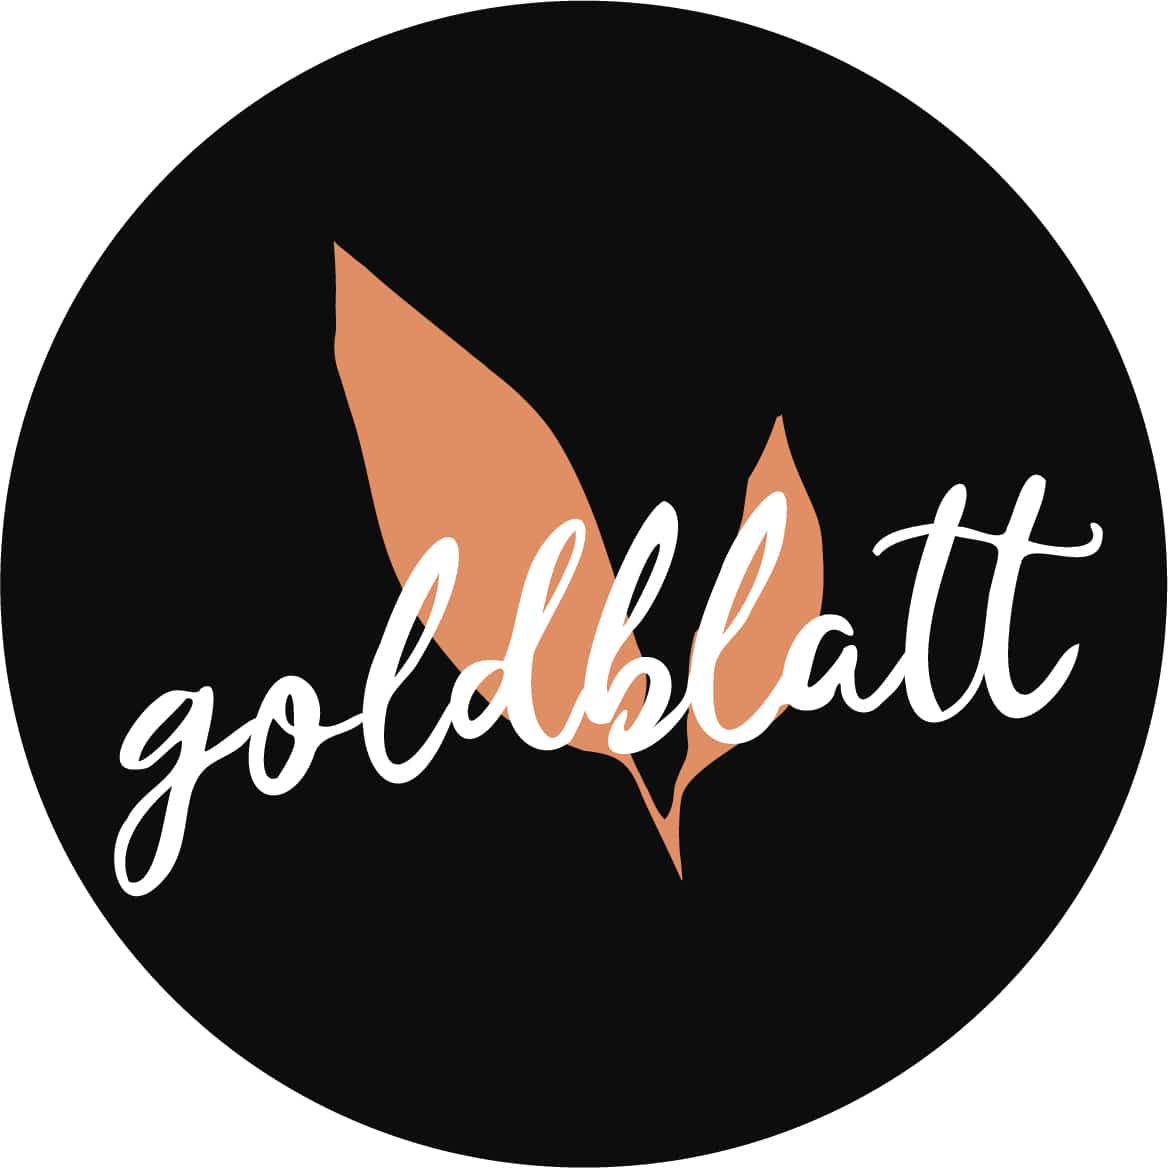 Goldblatt